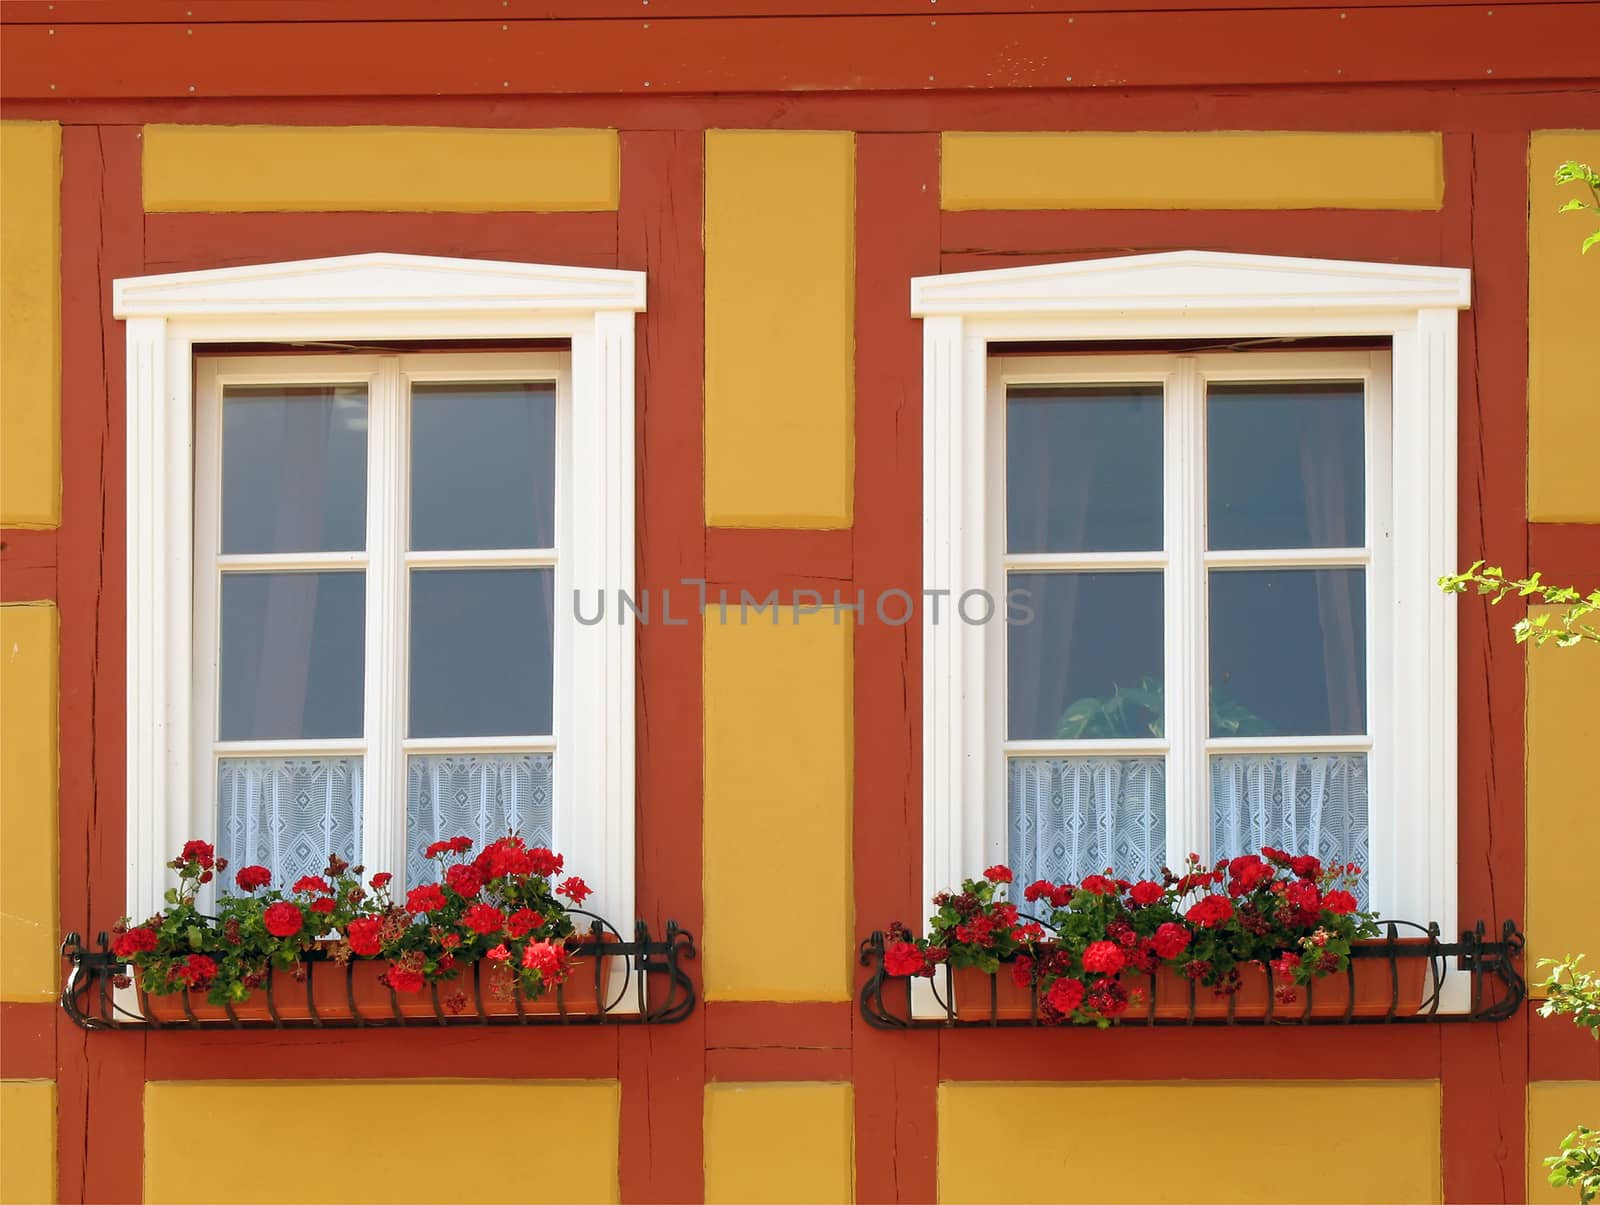 Windows with geraniums in Mecklenburg-Western Pomerania, Germany.